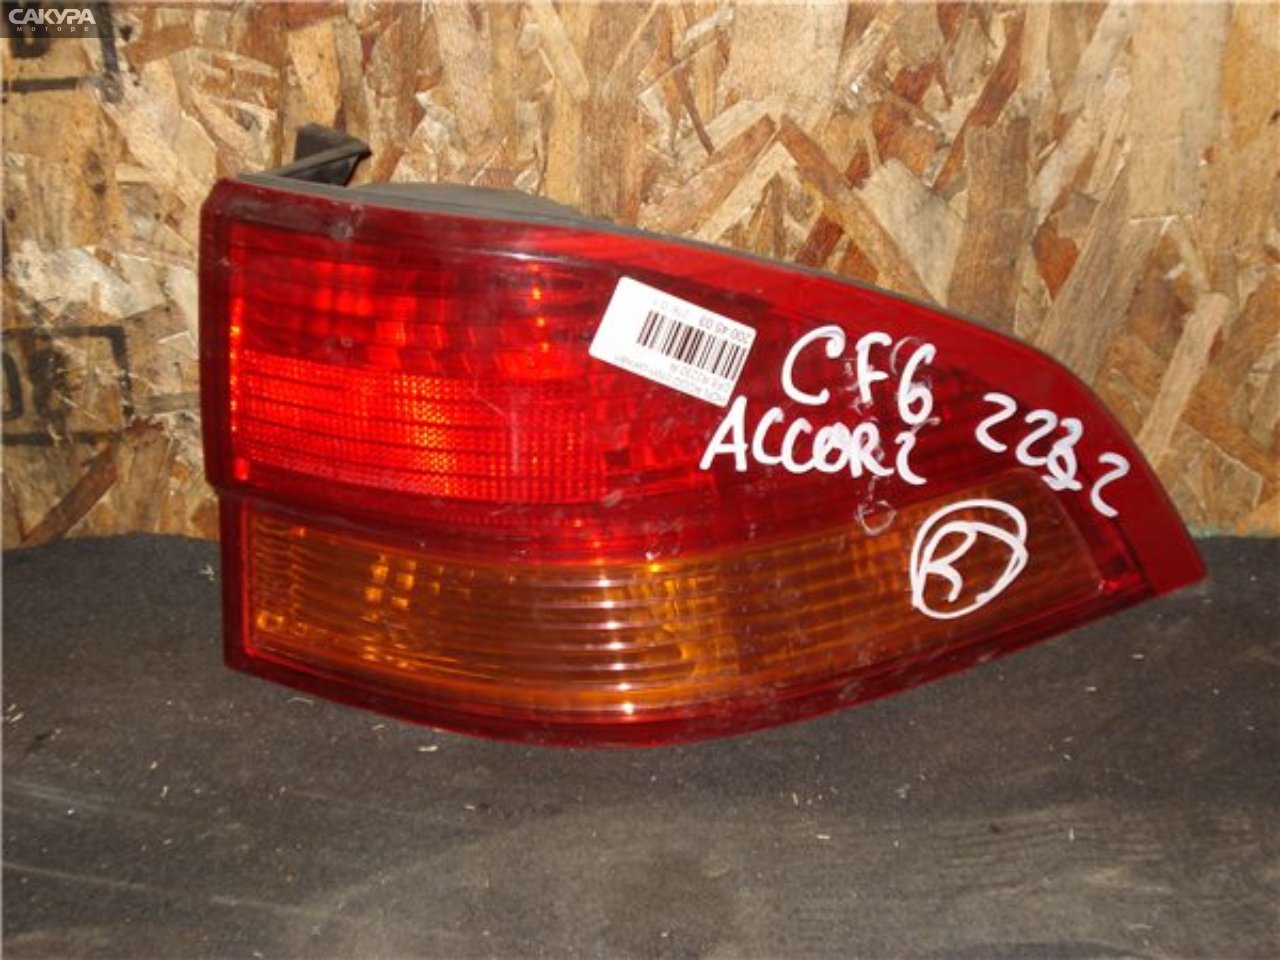 Фонарь стоп-сигнала правый Honda Accord Wagon CF6 R2232: купить в Сакура Красноярск.